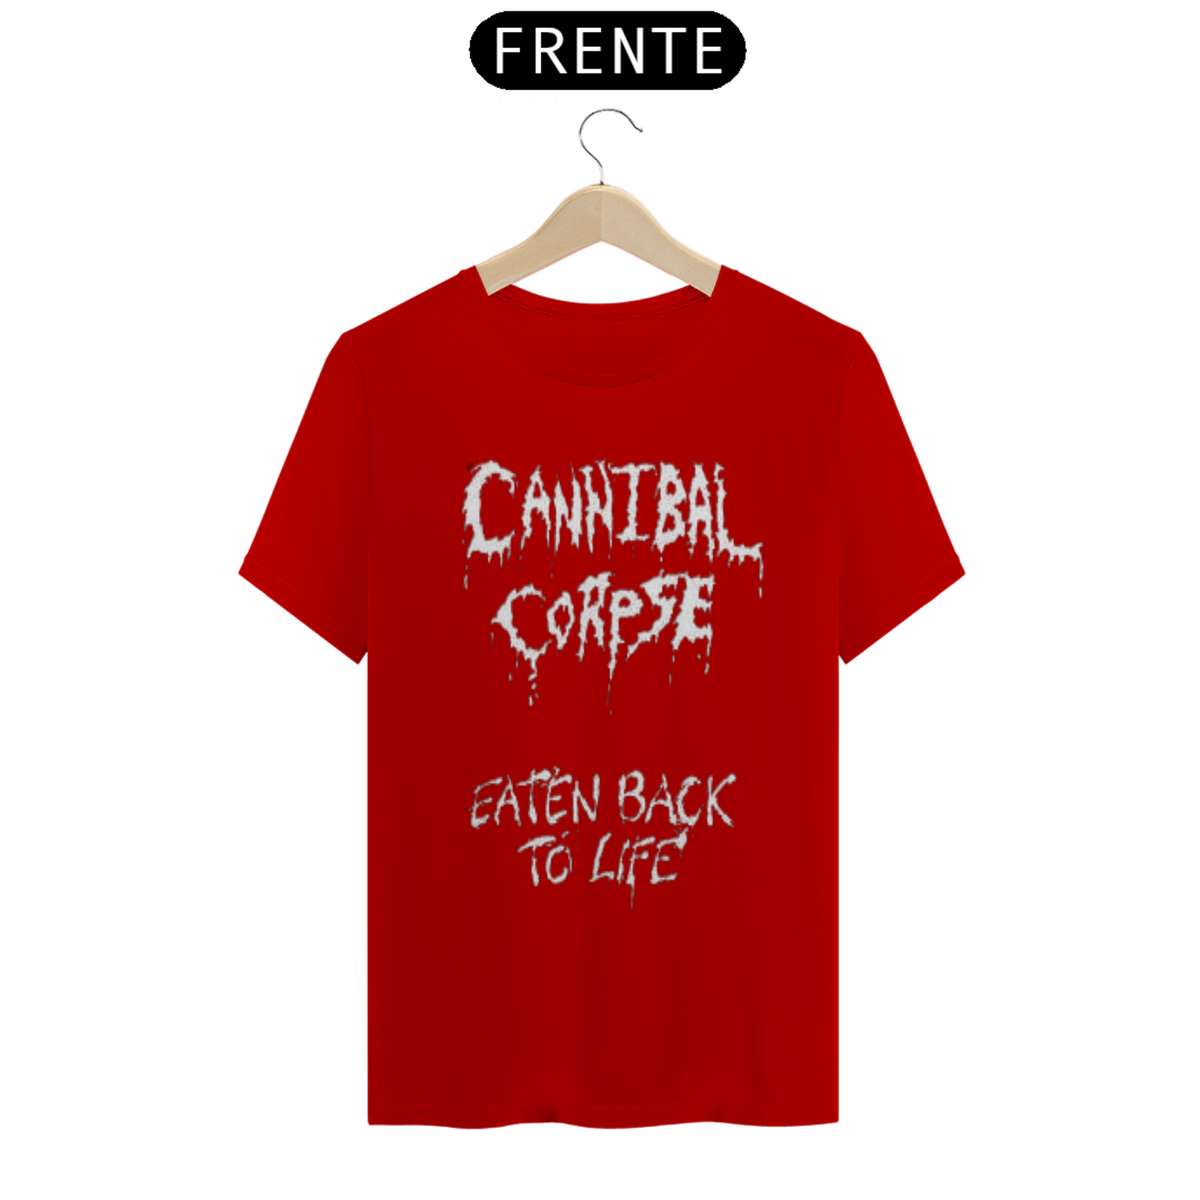 Nome do produto: Cannibal Corpse - Eaten Back to Life